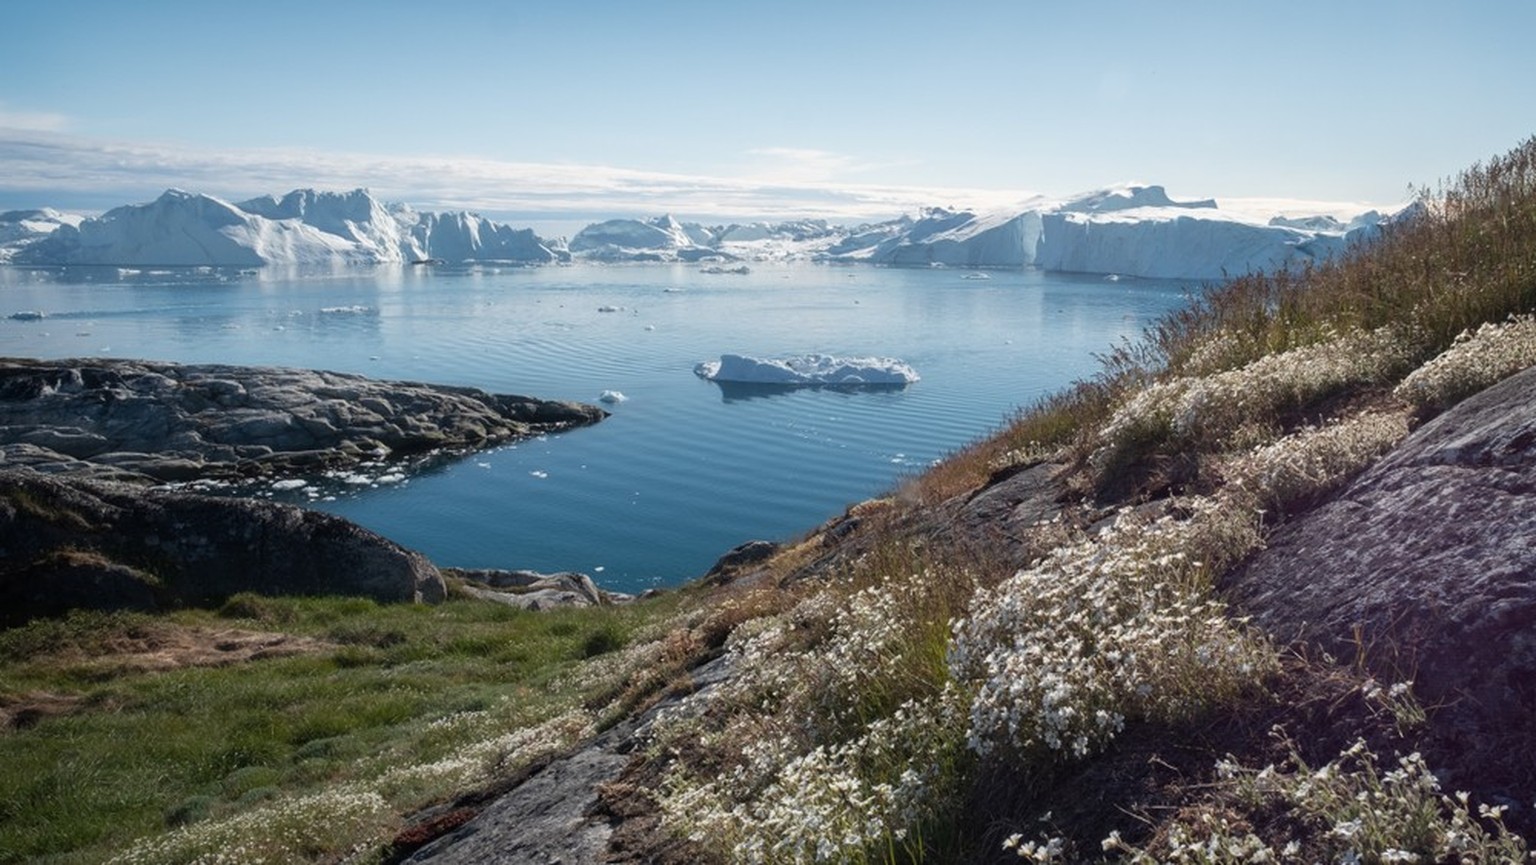 Les 50 plus beaux endroits du monde selon le Times: Ilulissat, Groenland